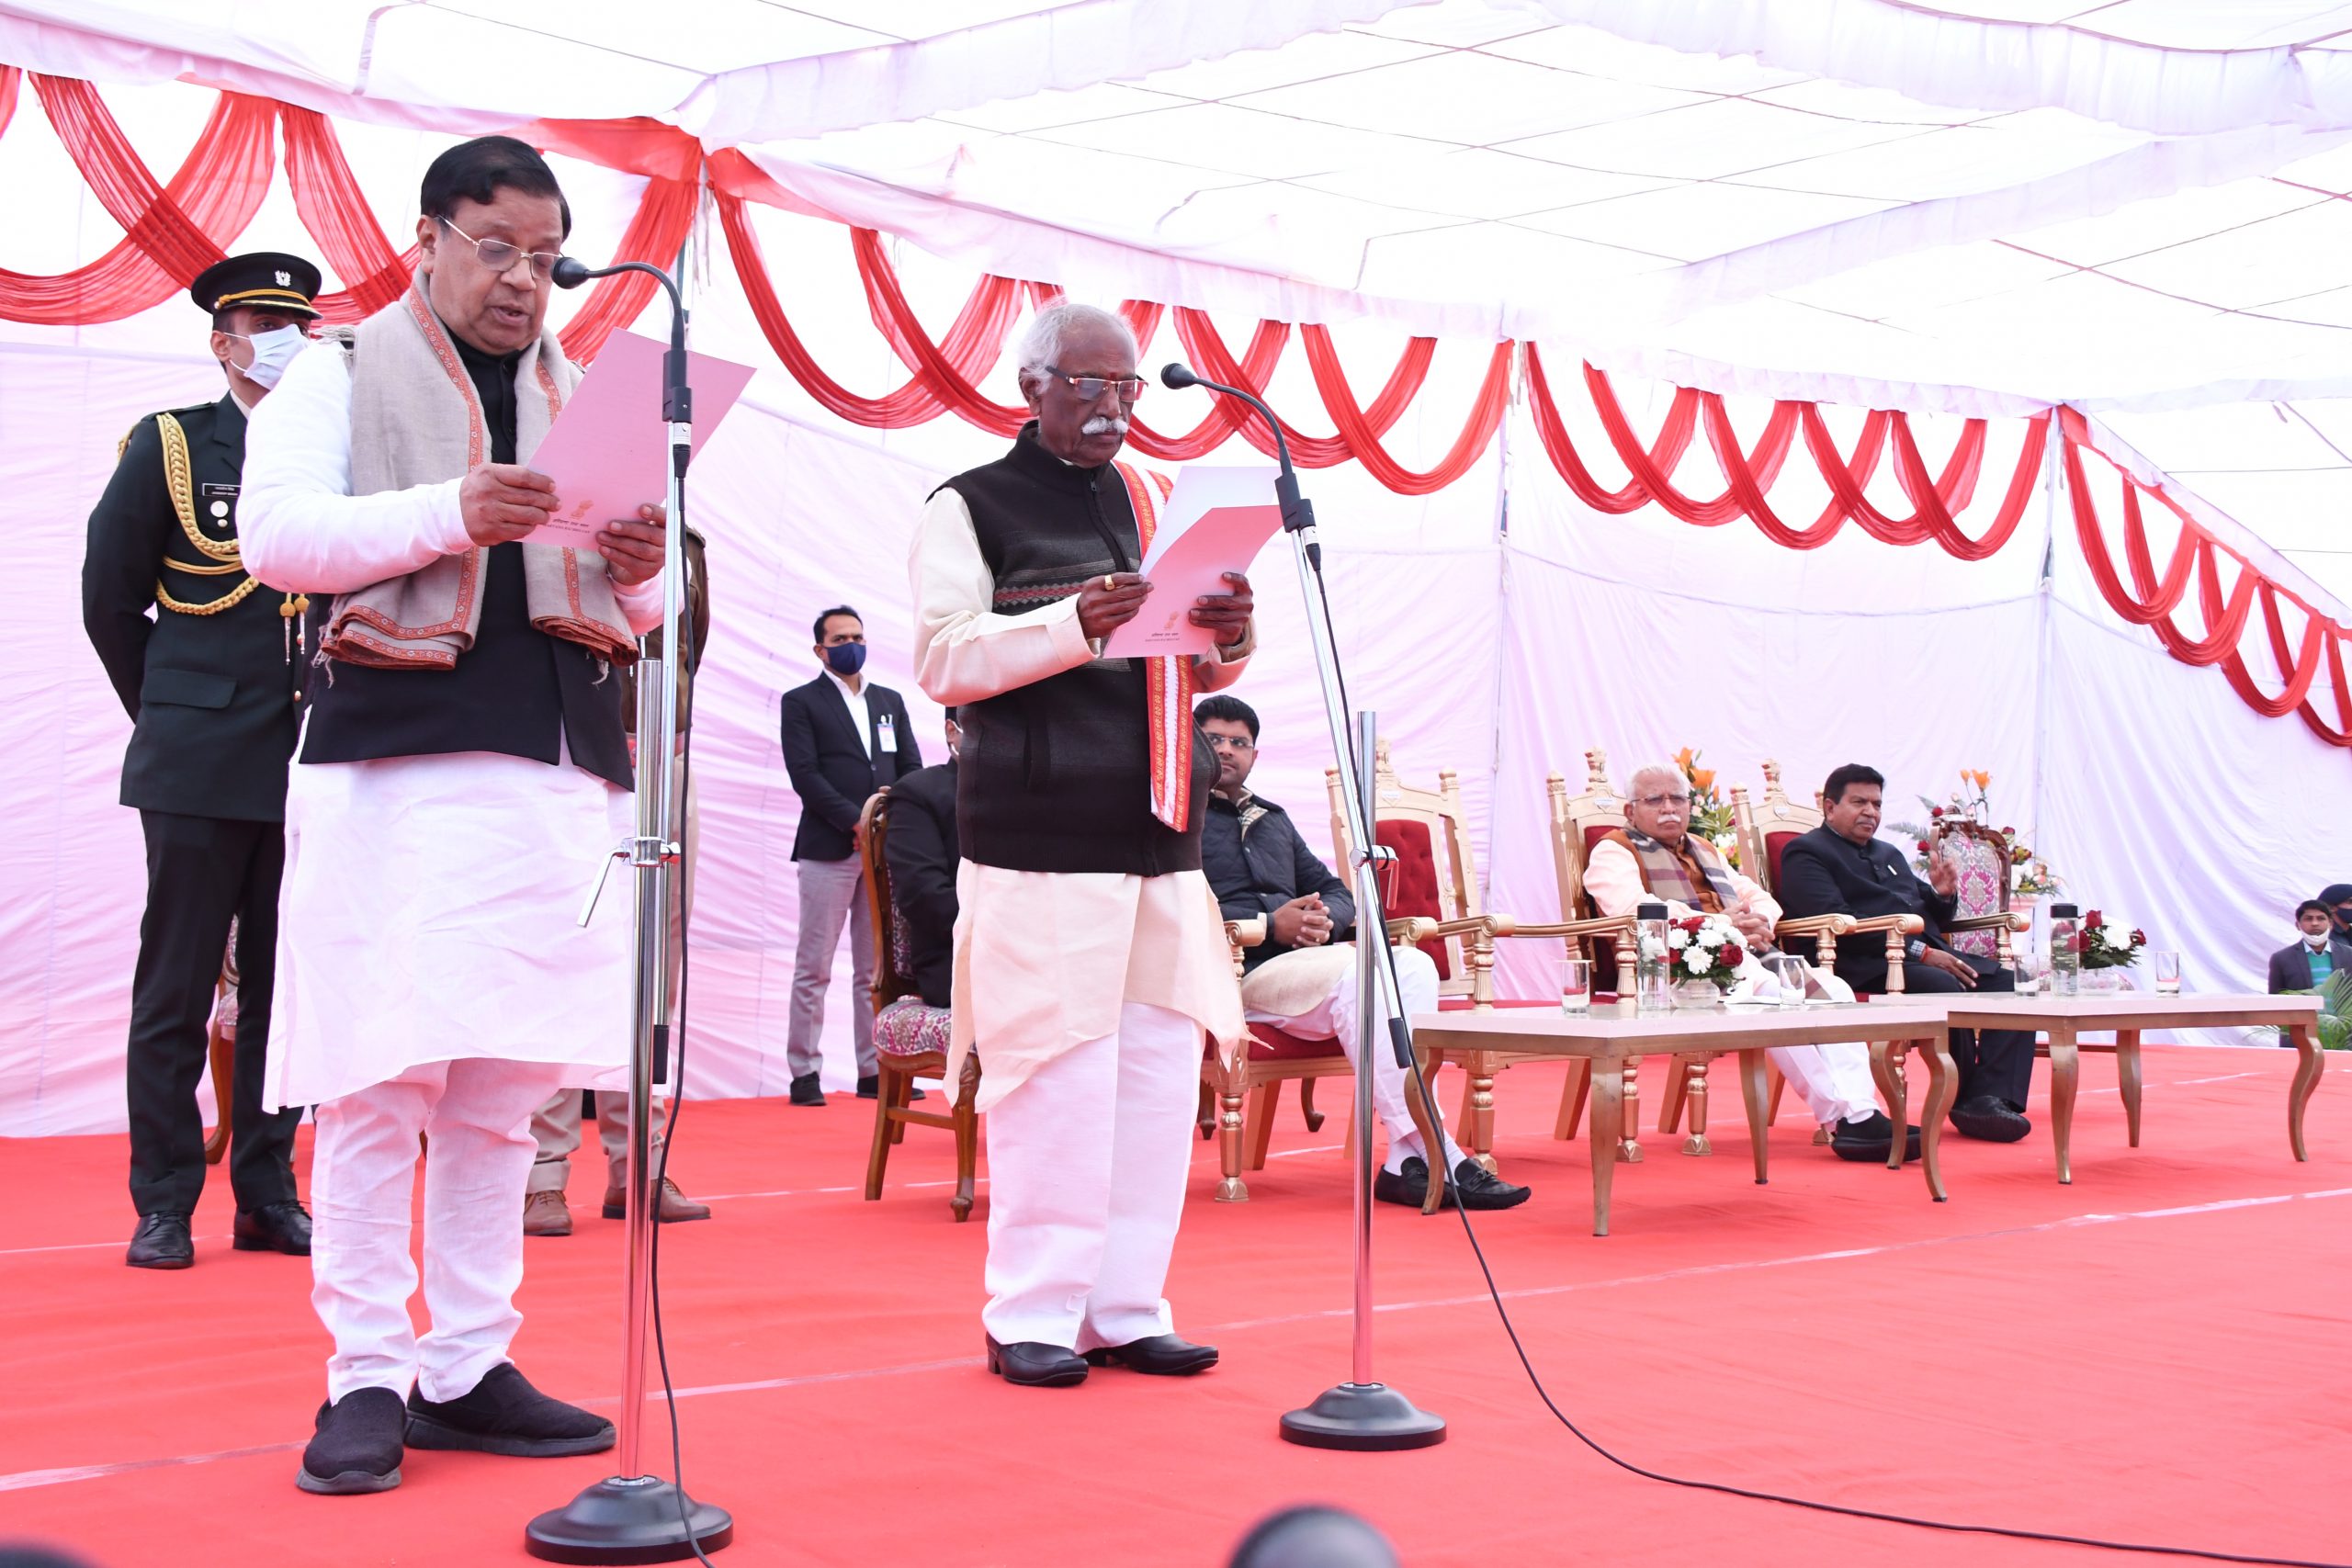 राज्यपाल श्री बंडारू दत्तात्रेय मंगलवार को हरियाणा राजभवन में आयोजित शपथ समारोह में डा. कमल गुप्ता को मंत्री पद की श